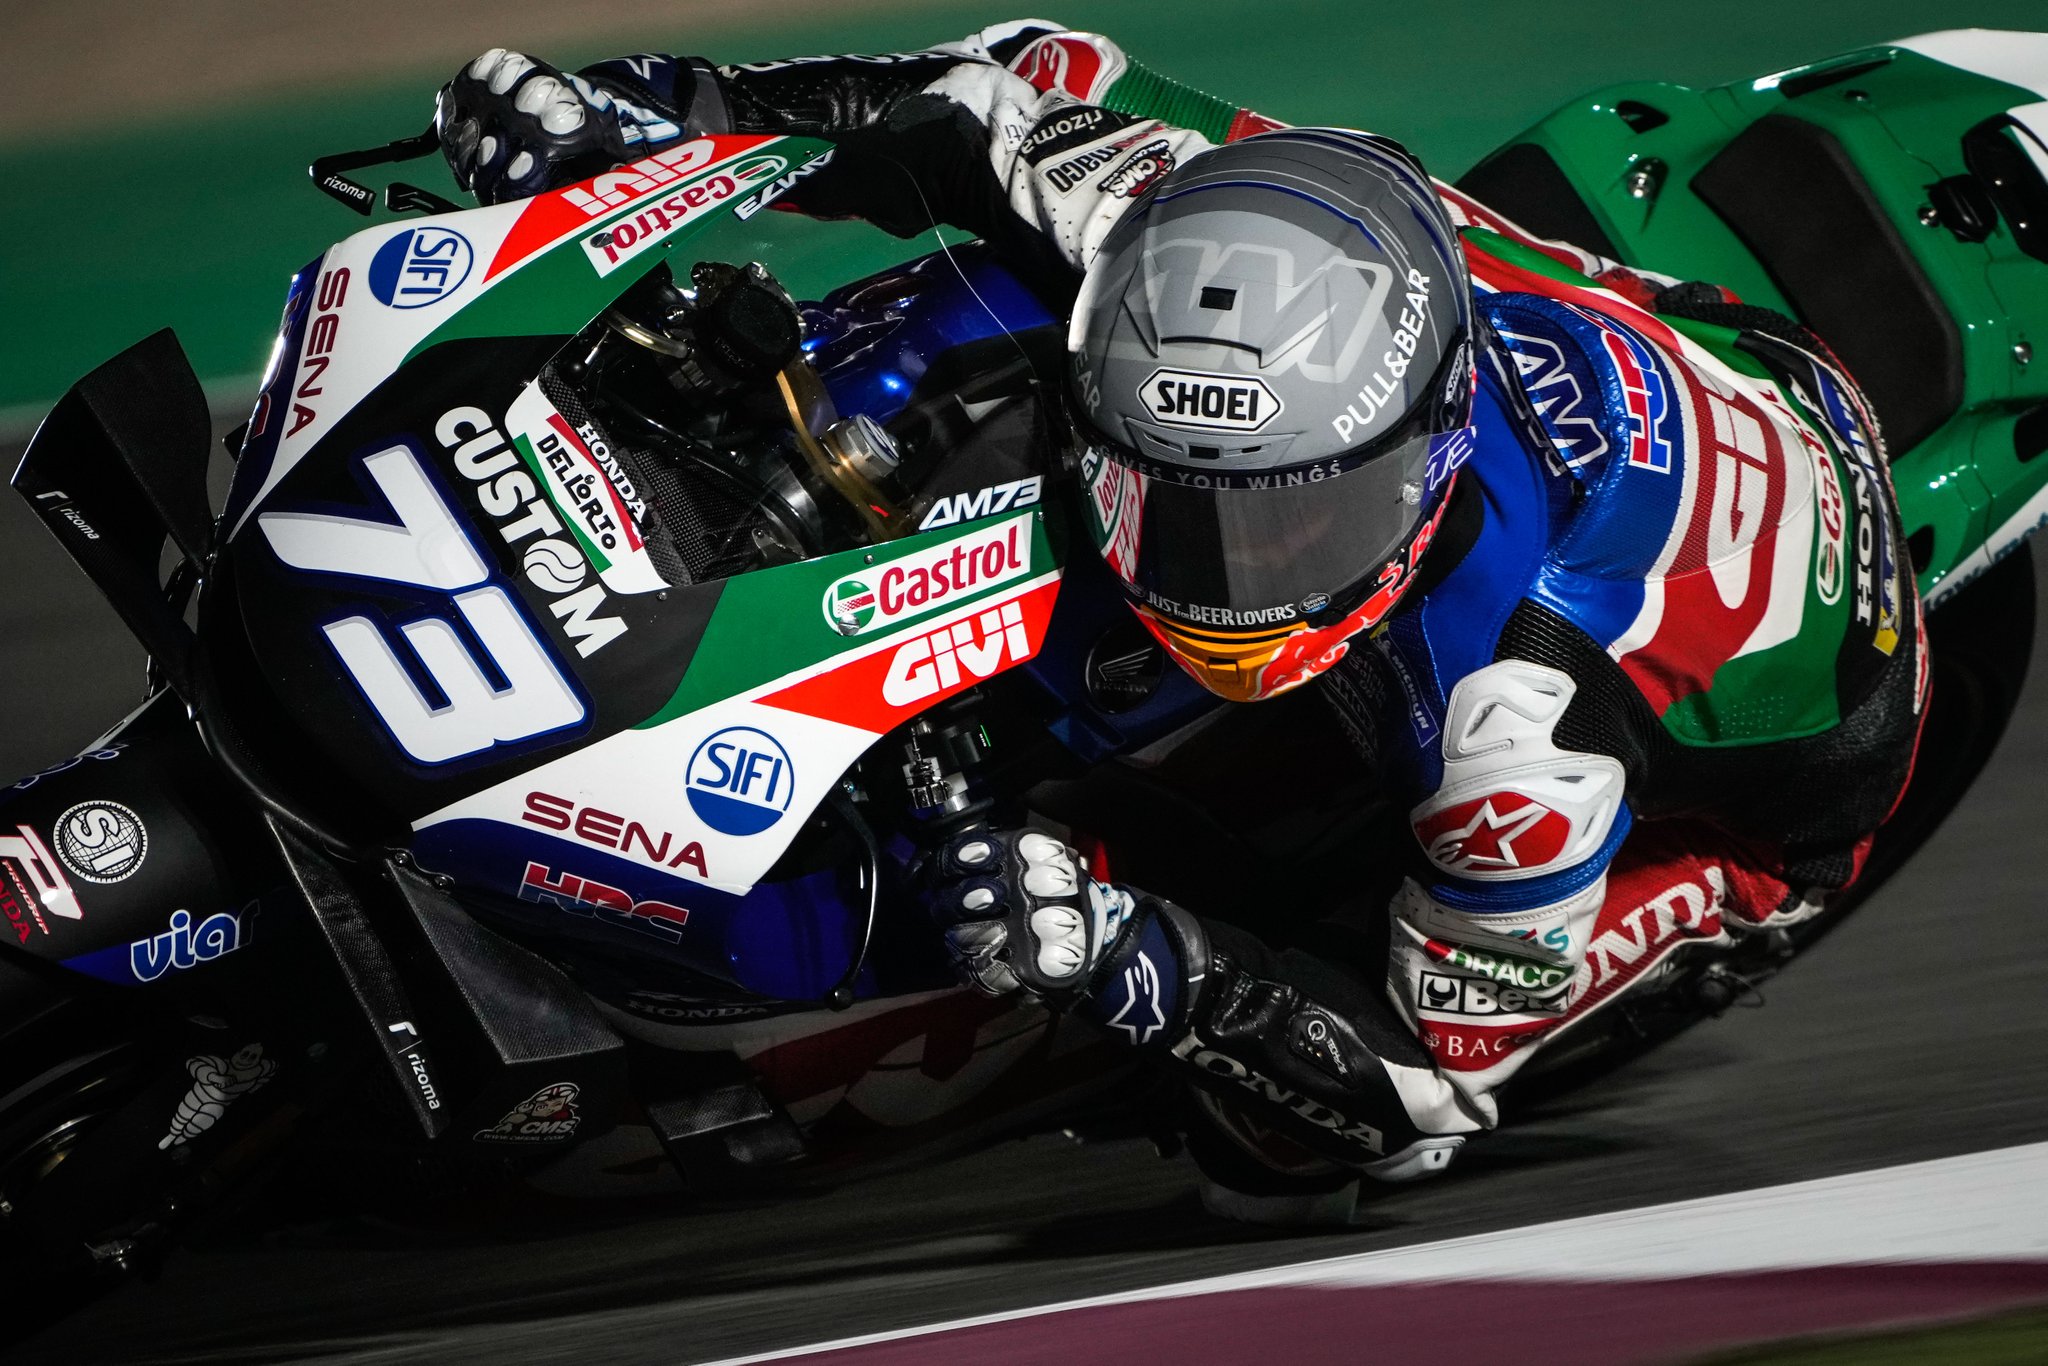 Pembalap LCR Honda Castrol Alex Marquez mengaku tak kapok meski mengalami kecelakaan berkali-kali selama tes pramusim di Losail Qatar. (Foto: Twitter/@alexmarquez73)